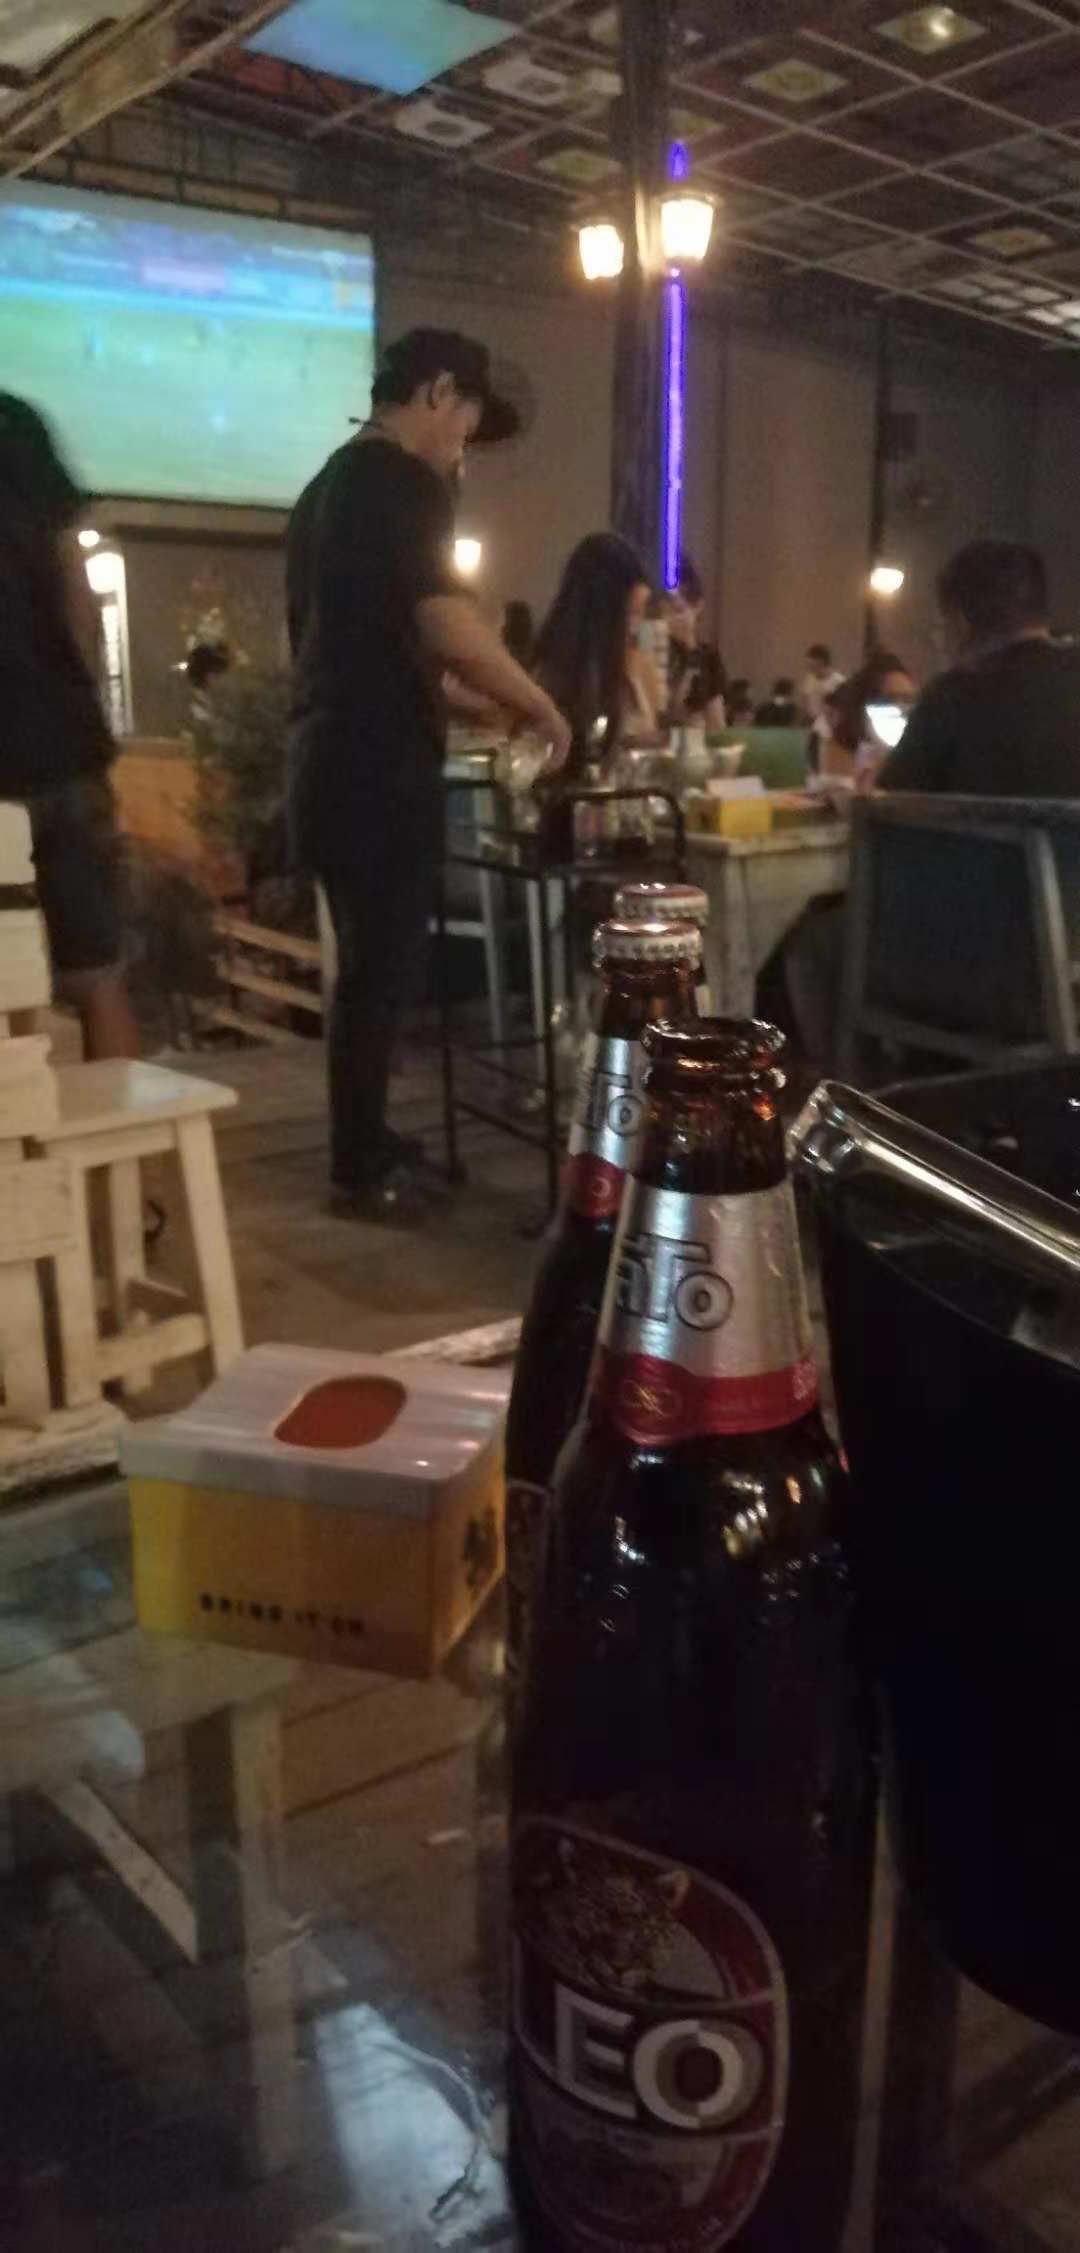 泰國酒吧真心便宜，服務好 美女很多！一個勁的在那里亂扭95 / 作者:123456790 / 帖子ID:468